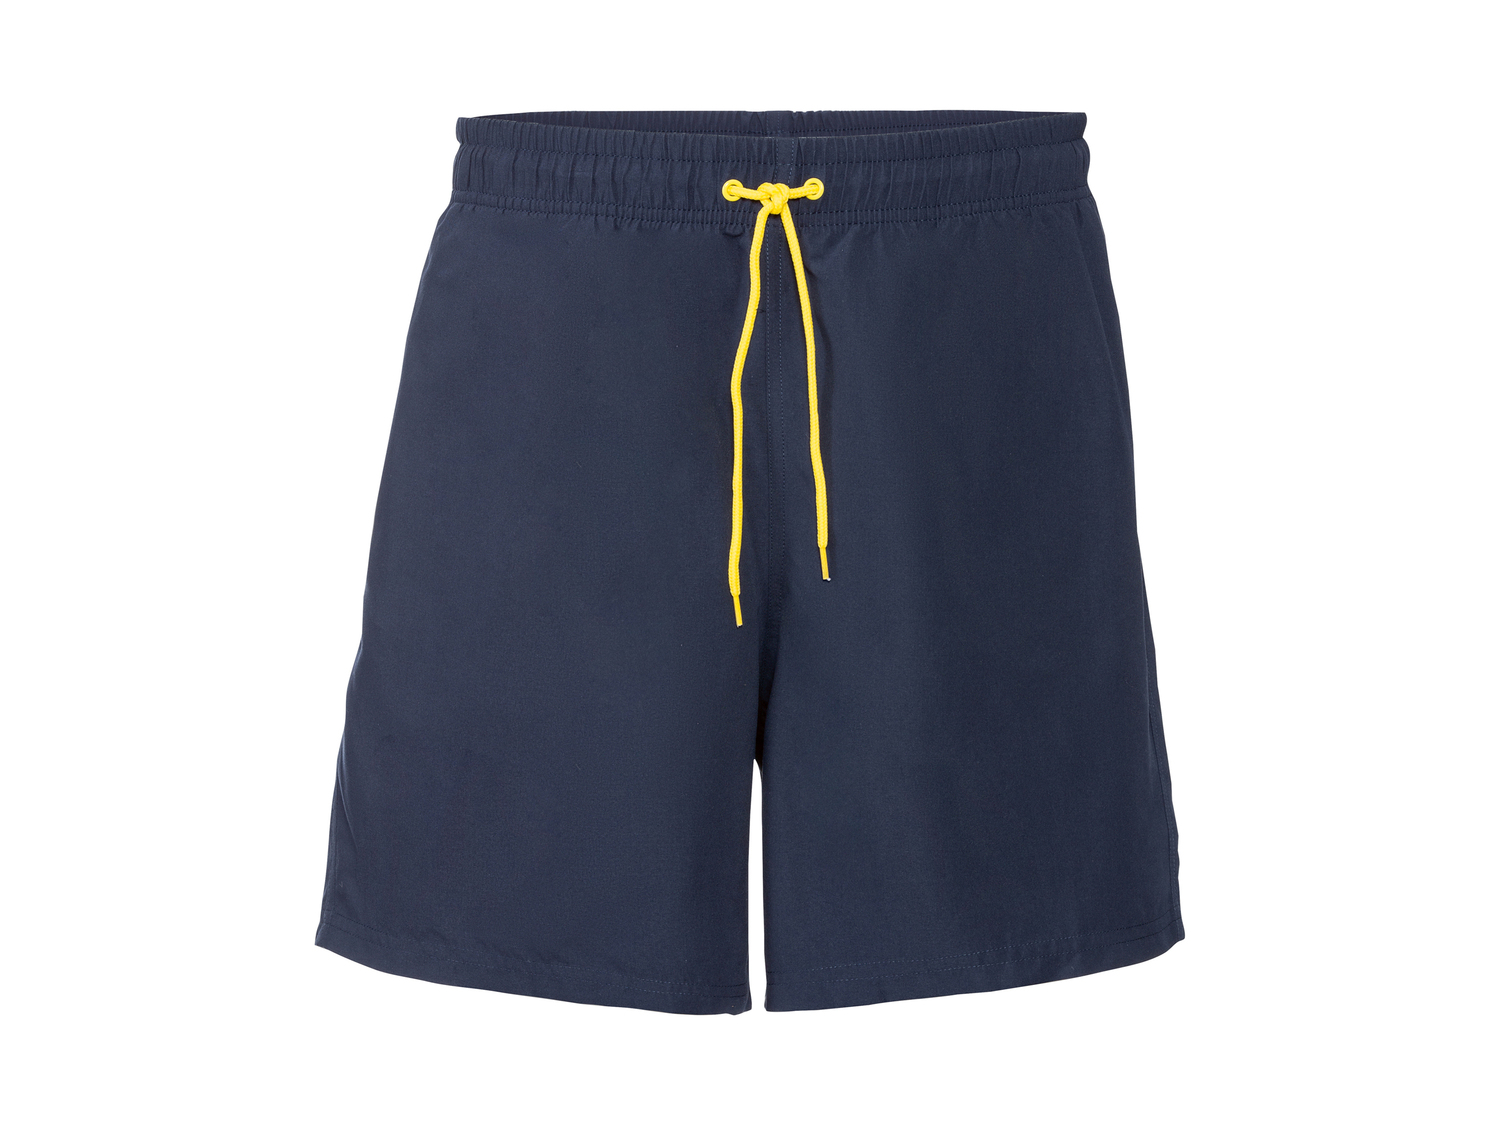 Shorts mare da uomo Livergy, prezzo 4.99 &#8364; 
Misure: S-XL
Taglie disponibili

Caratteristiche

- ...